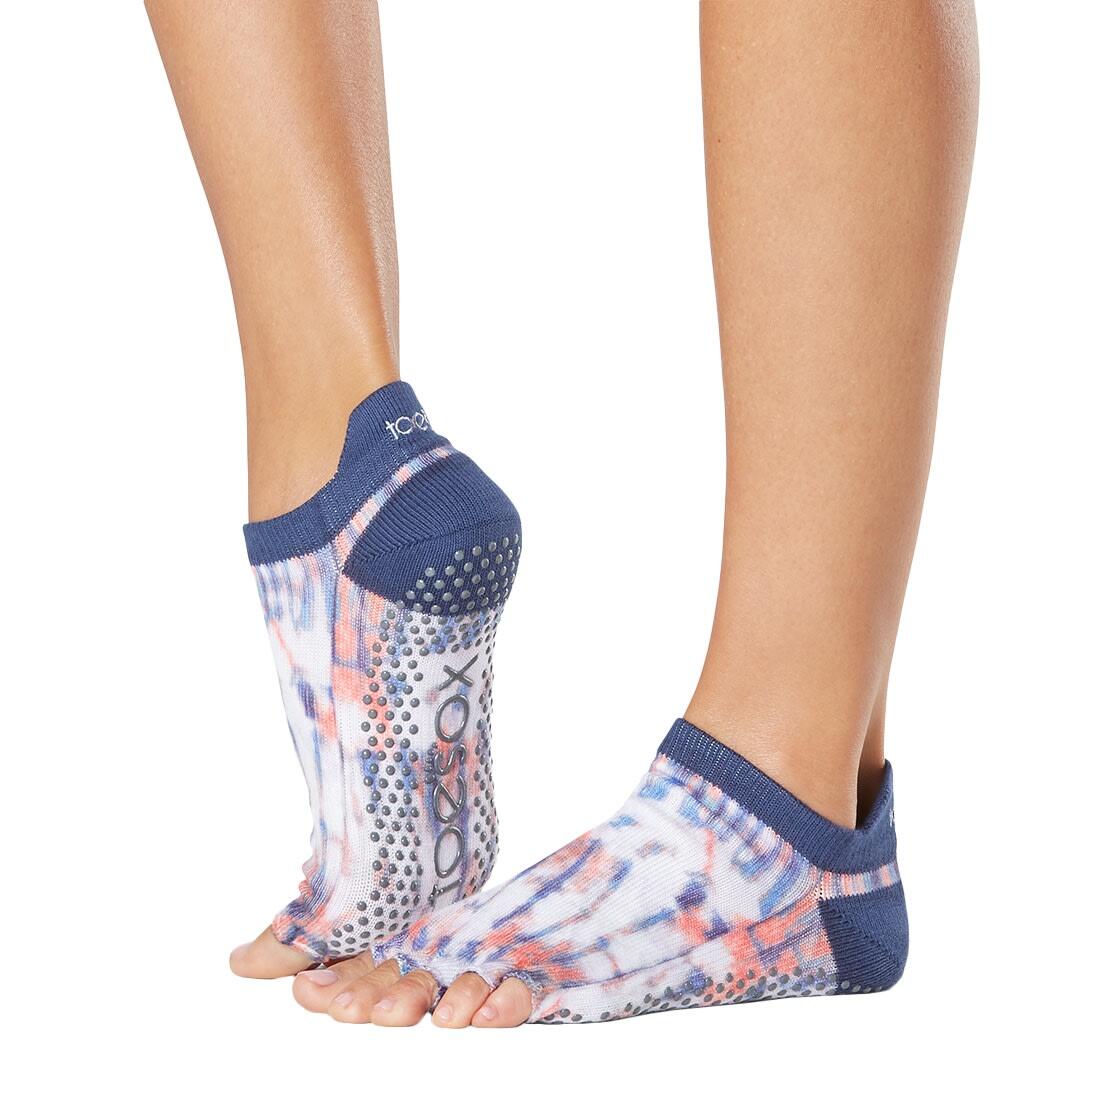 FITNESS-MAD Womens/Ladies Santa Fe Half Toe Socks (Blue)